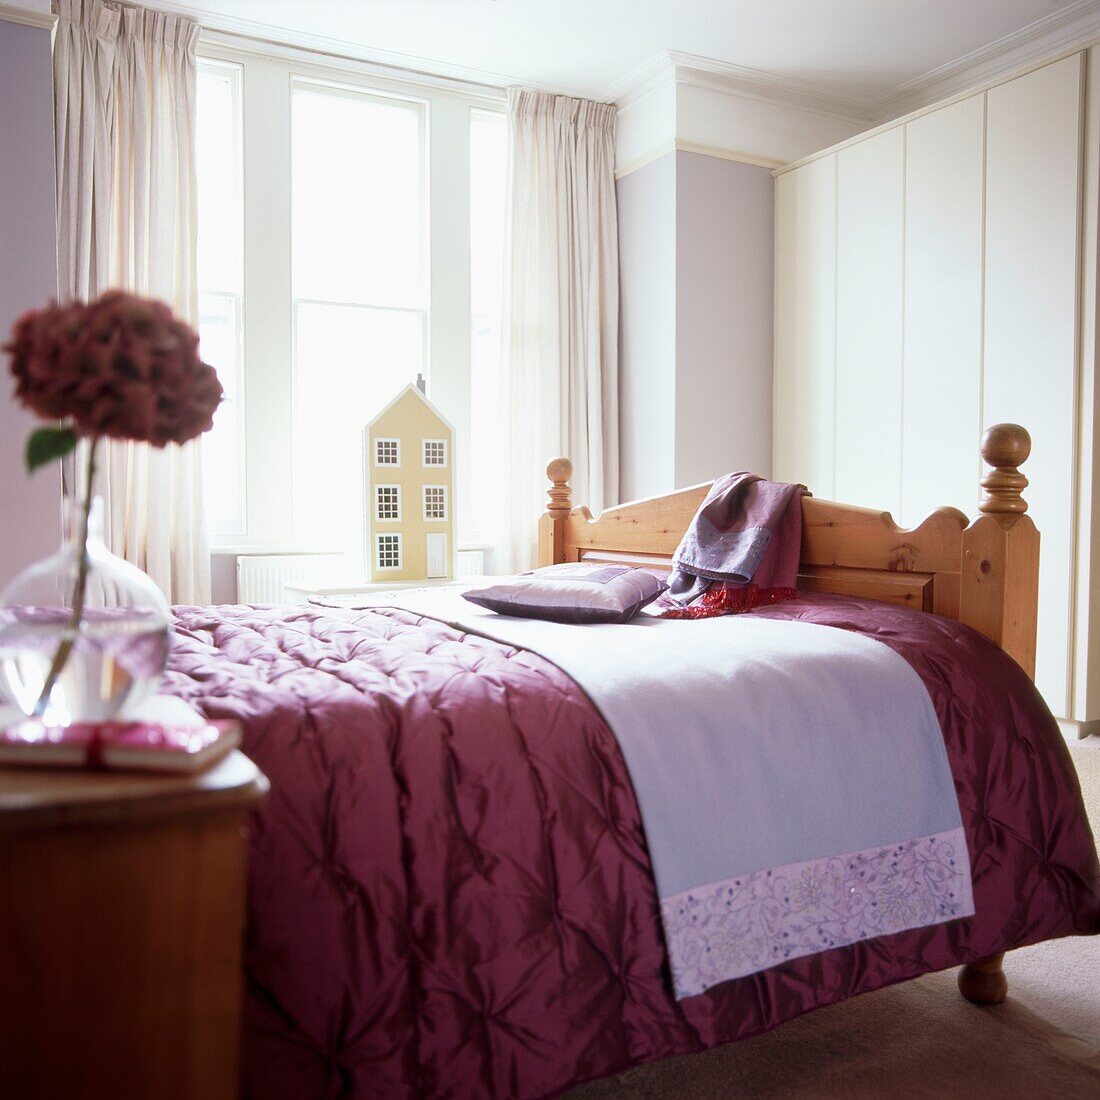 Hauptschlafzimmer mit violetter Satin-Bettdecke auf dem Doppelbett